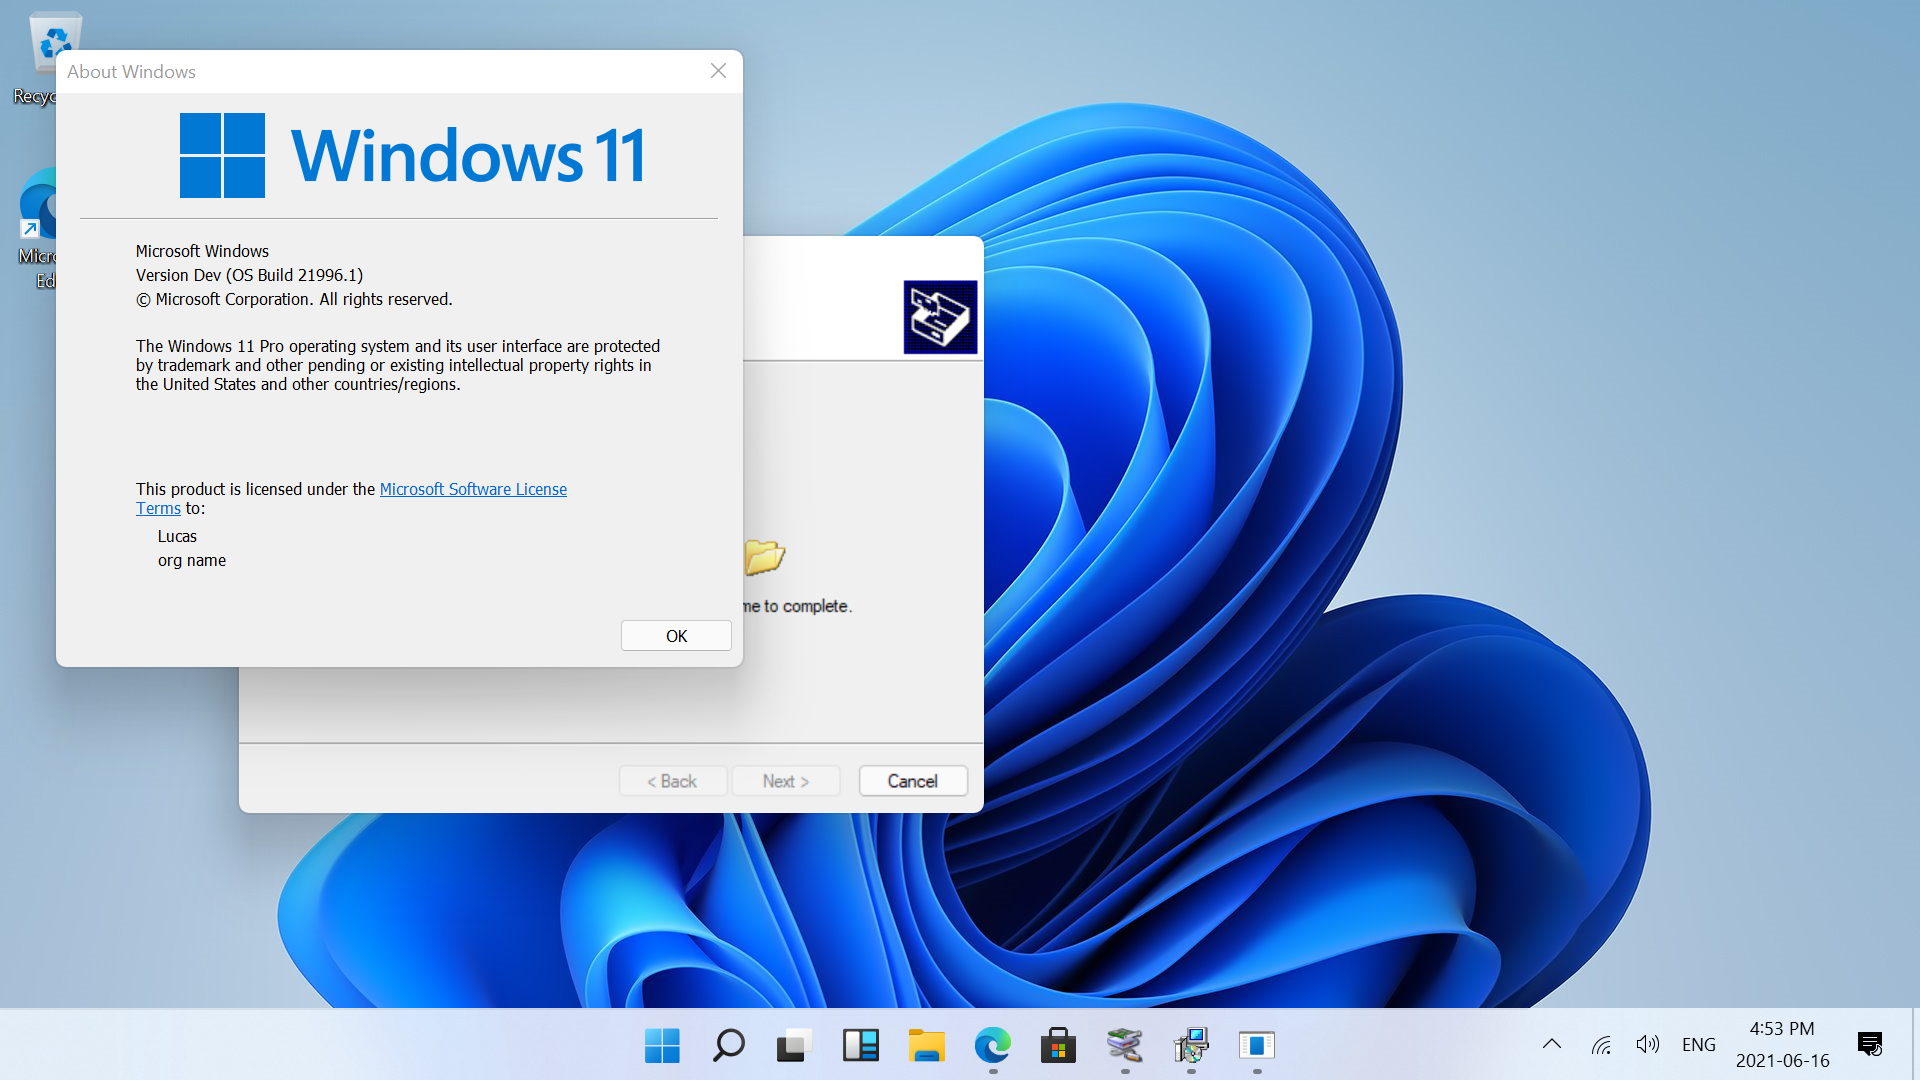 Żegnaj WinRAR - Windows 11 otrzymuje natywną obsługę archiwów RAR